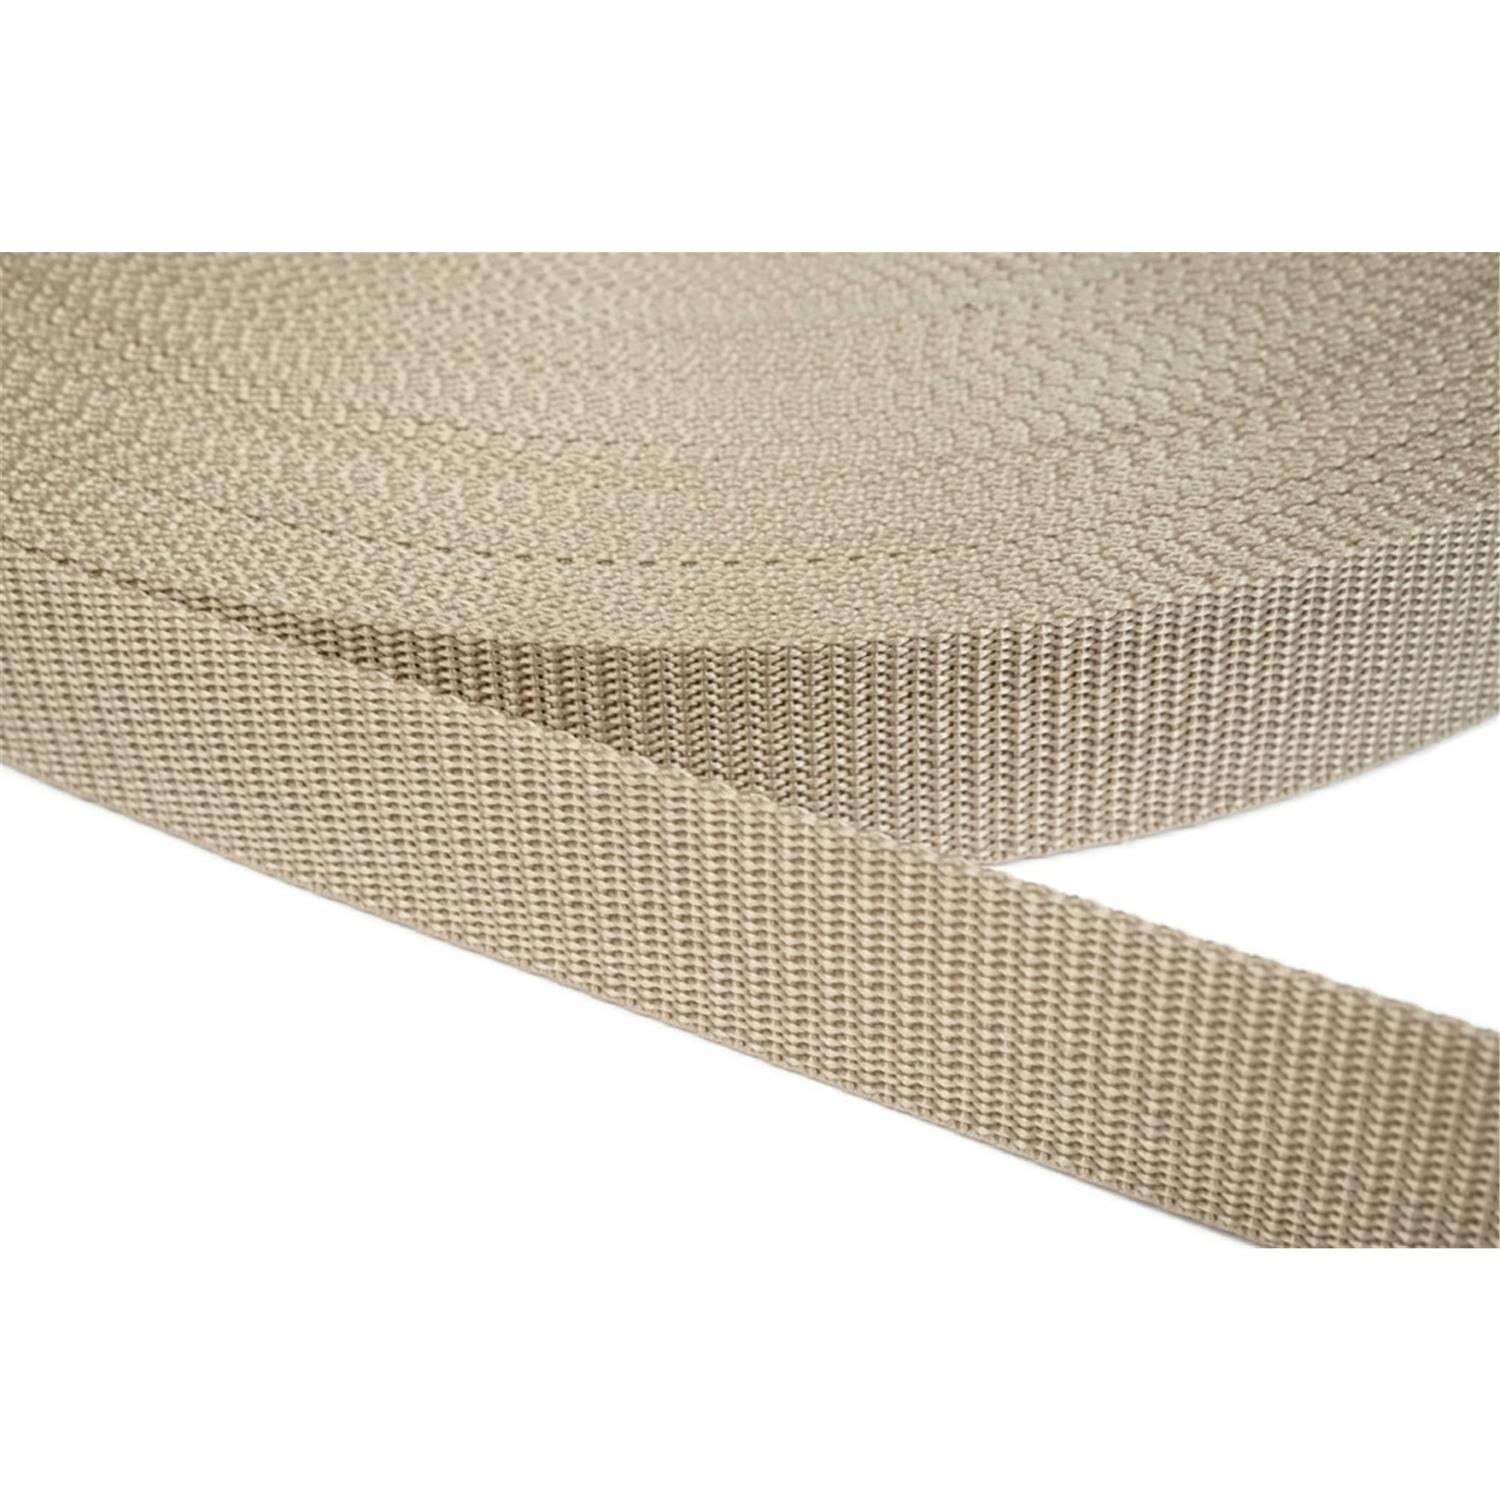 Gurtband 15mm breit aus Polypropylen in 41 Farben 03 - beige 50 Meter